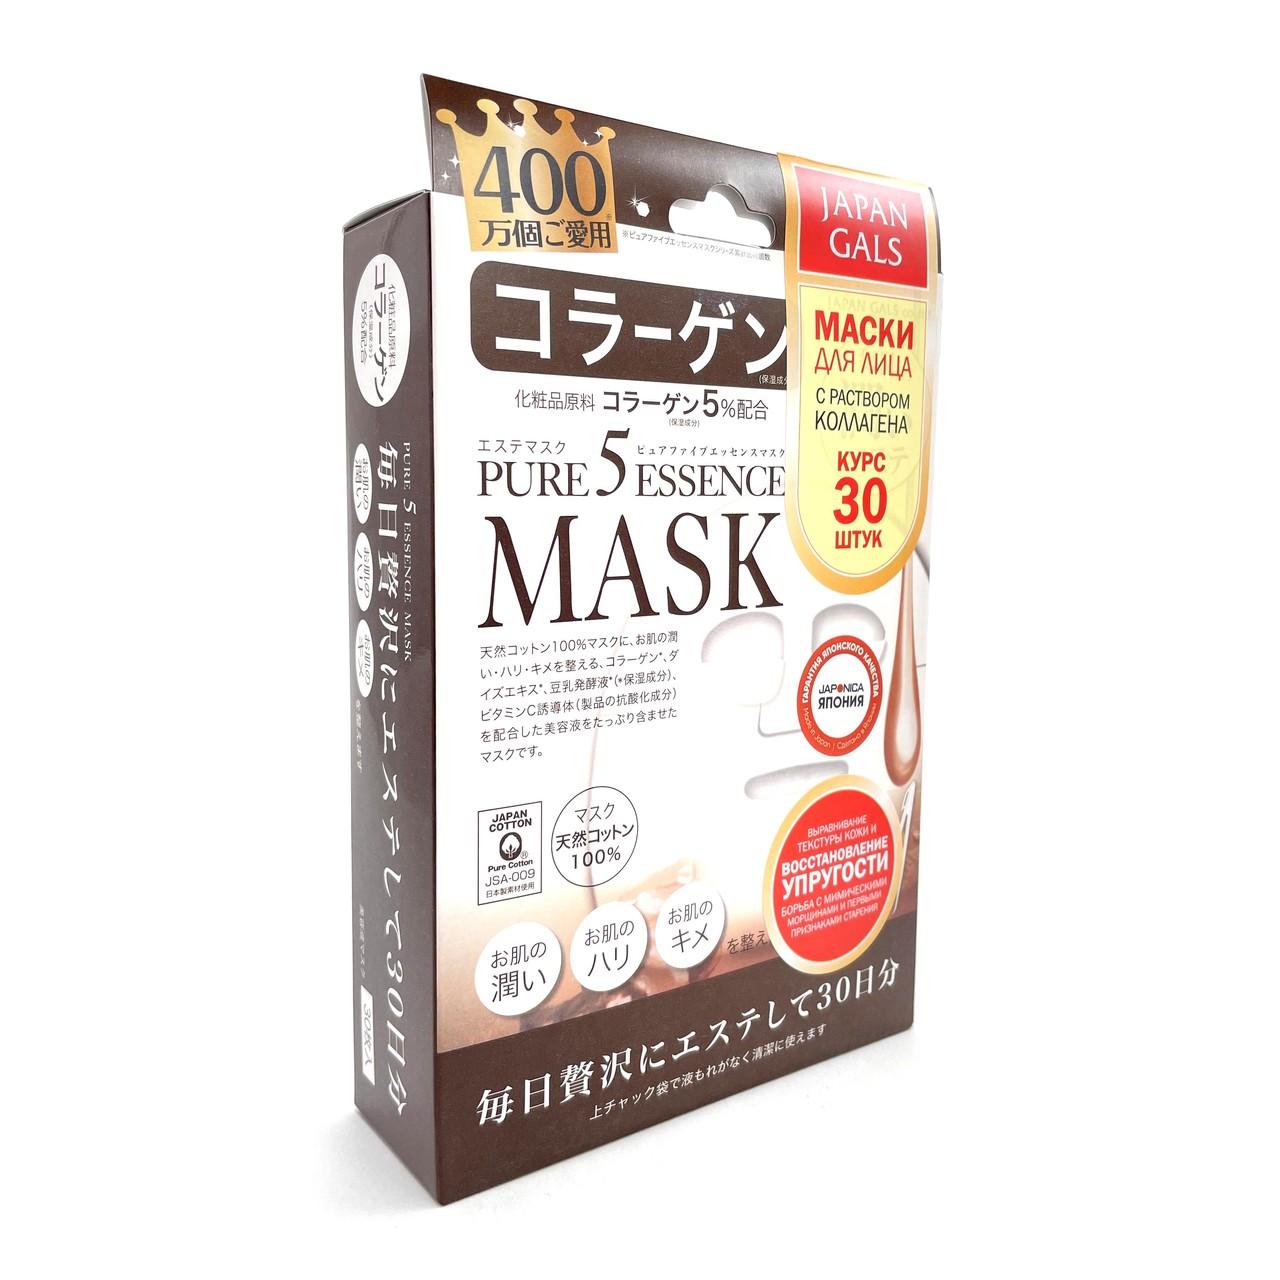 Маска Japan Gals с коллагеном Pure5 Essential 30 шт aha маска для лица эффект пилинга обновление и сияние 1шт